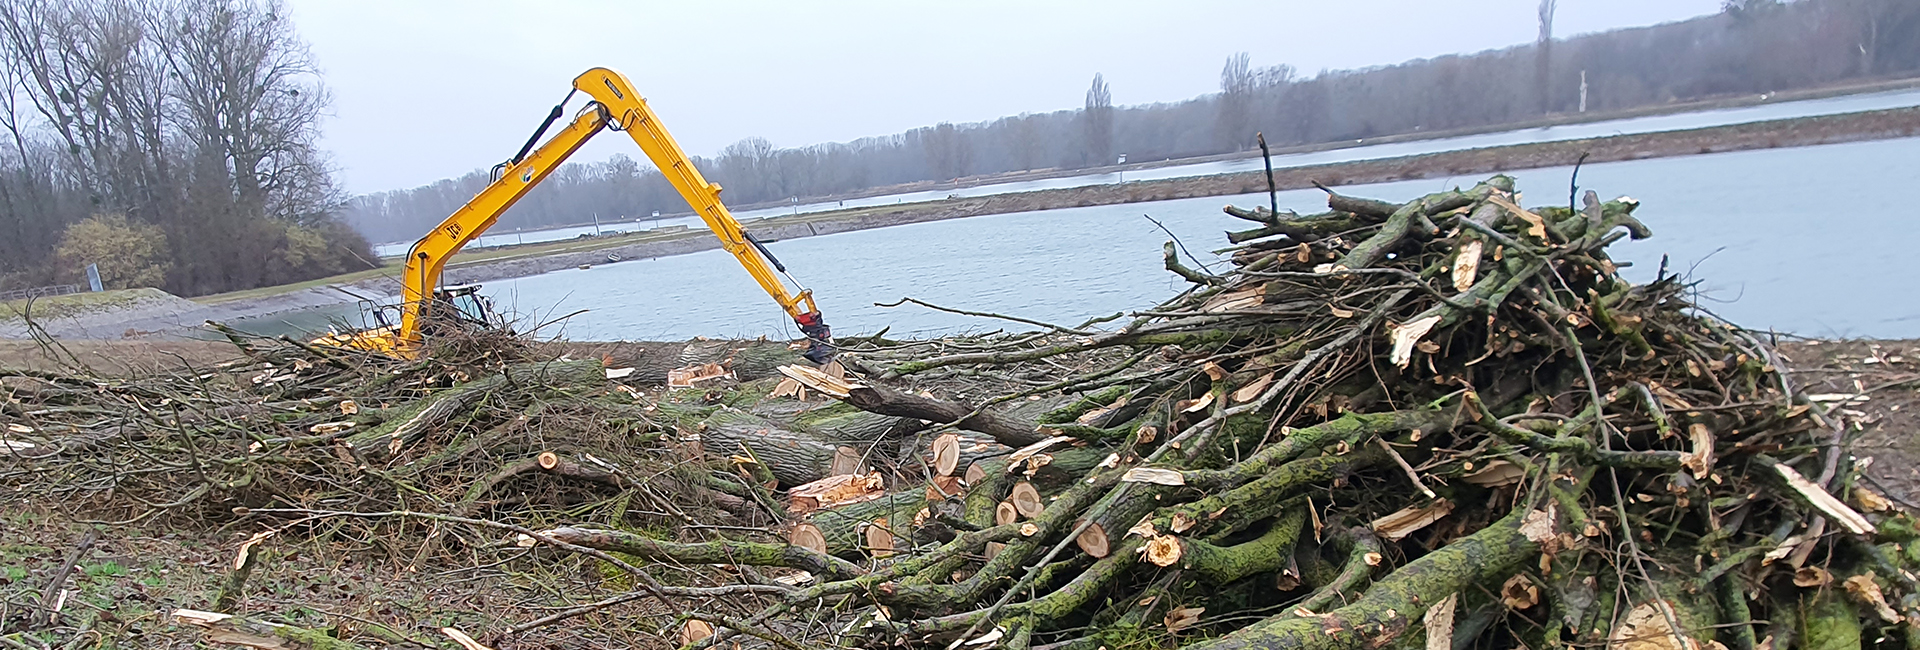 Raupenbagger mit Holzgreifer, der Äste aus dem Baumschnitt sammelt, um das Gelände zu roden und sauberer zu machen.